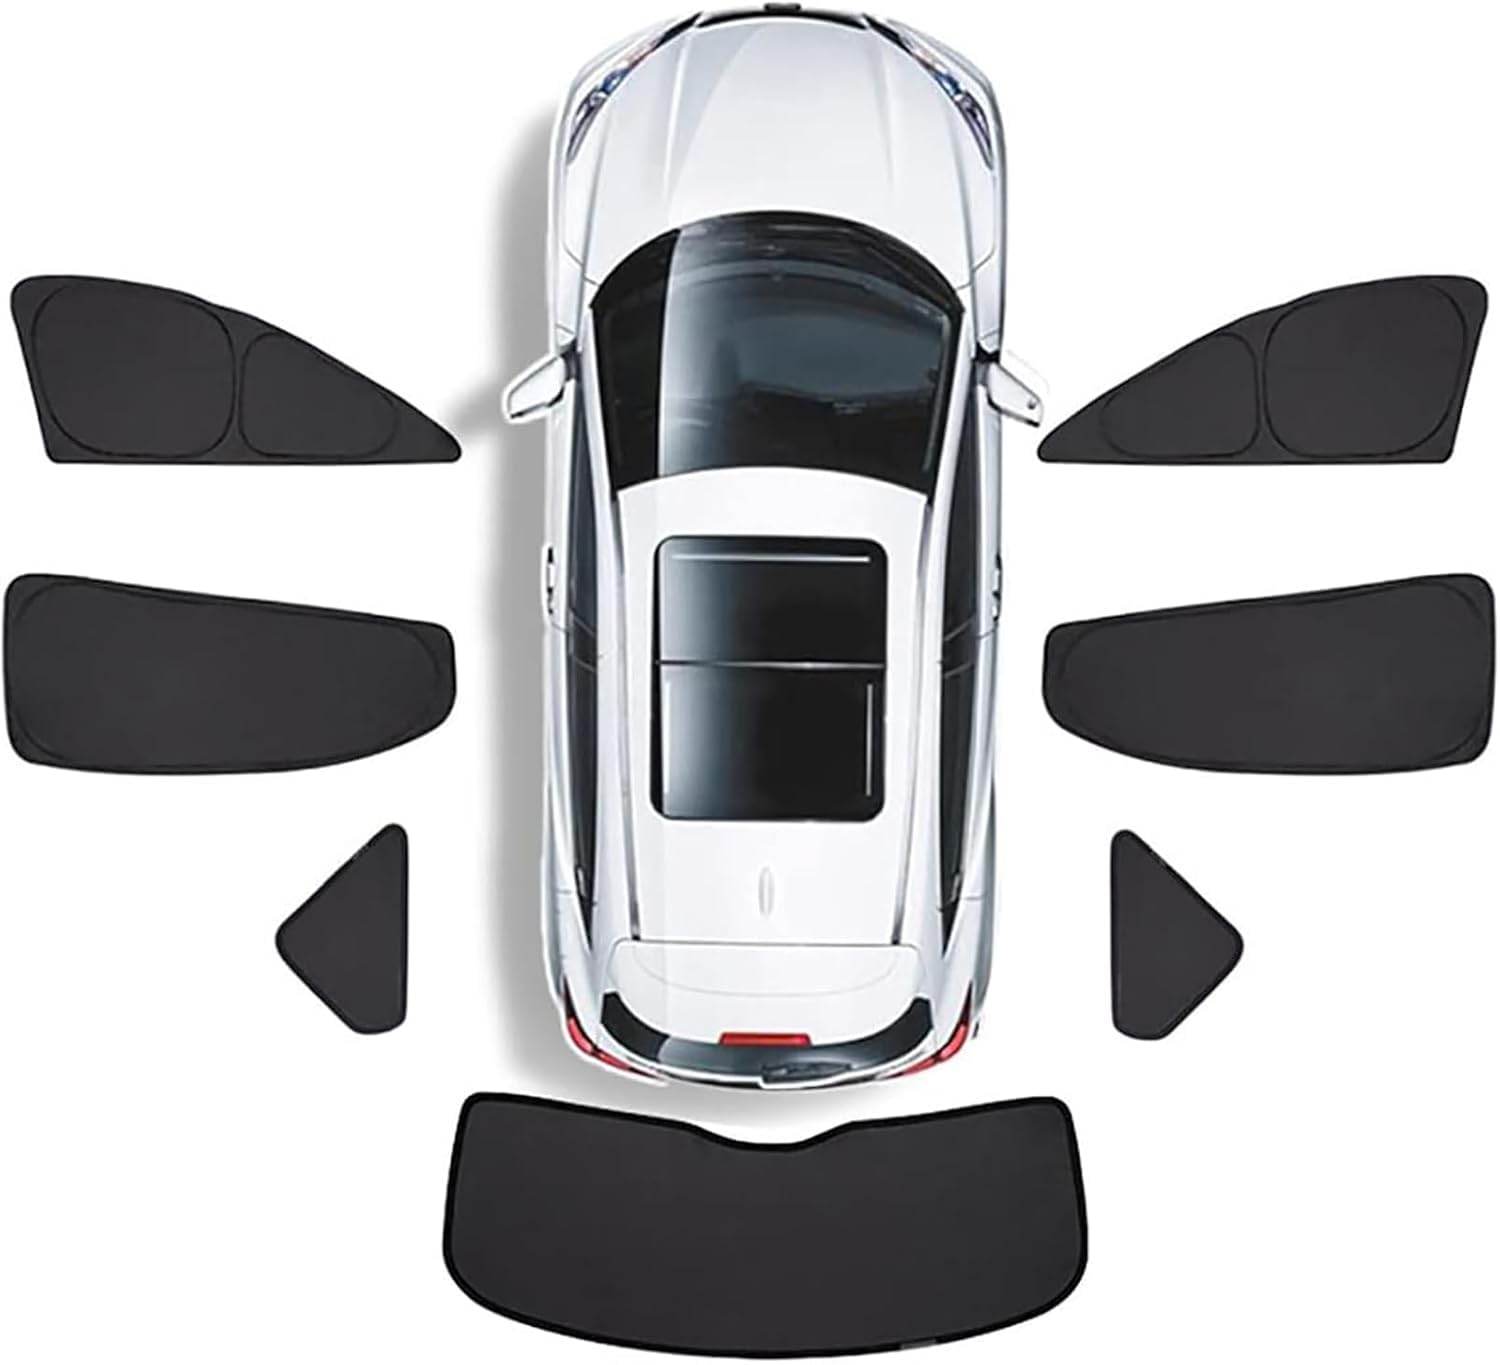 Auto Seitenfenster Sonnenschutz für Hyundai Solaris I 2011 2012 2013 2014 2015 2016, Front Heck and Seitenscheibe UV Schutz Auto Zubehör,F/Whole car 7pieces von KHXLZY88